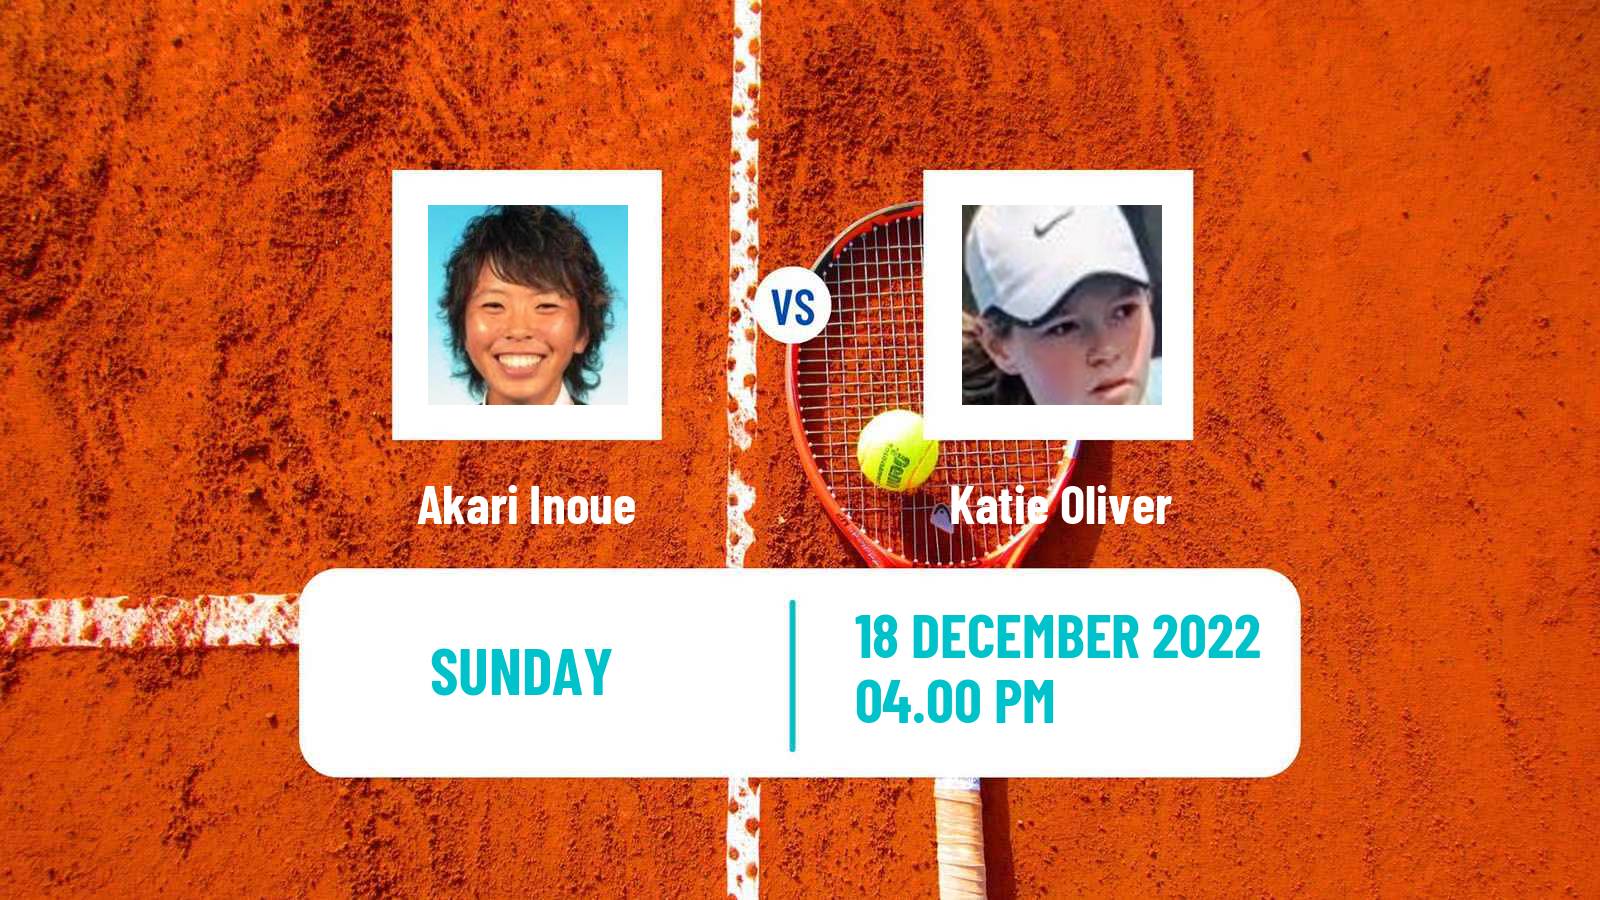 Tennis ITF Tournaments Akari Inoue - Katie Oliver